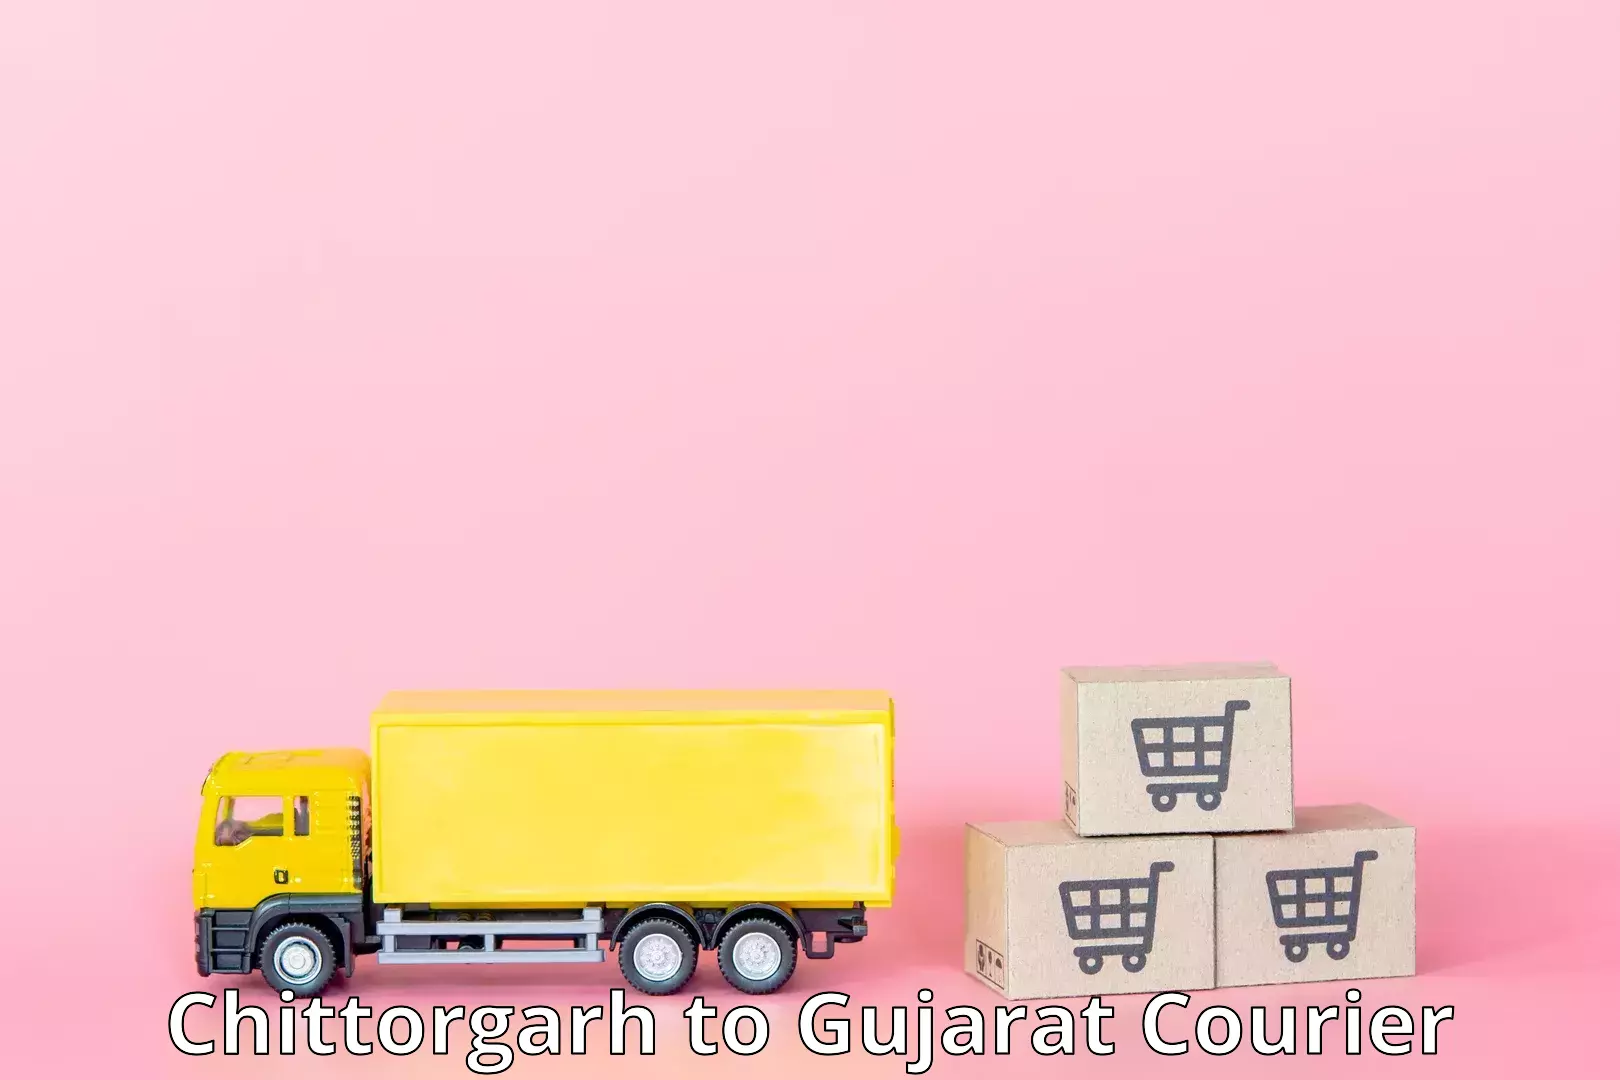 Reliable delivery network Chittorgarh to Gandhinagar